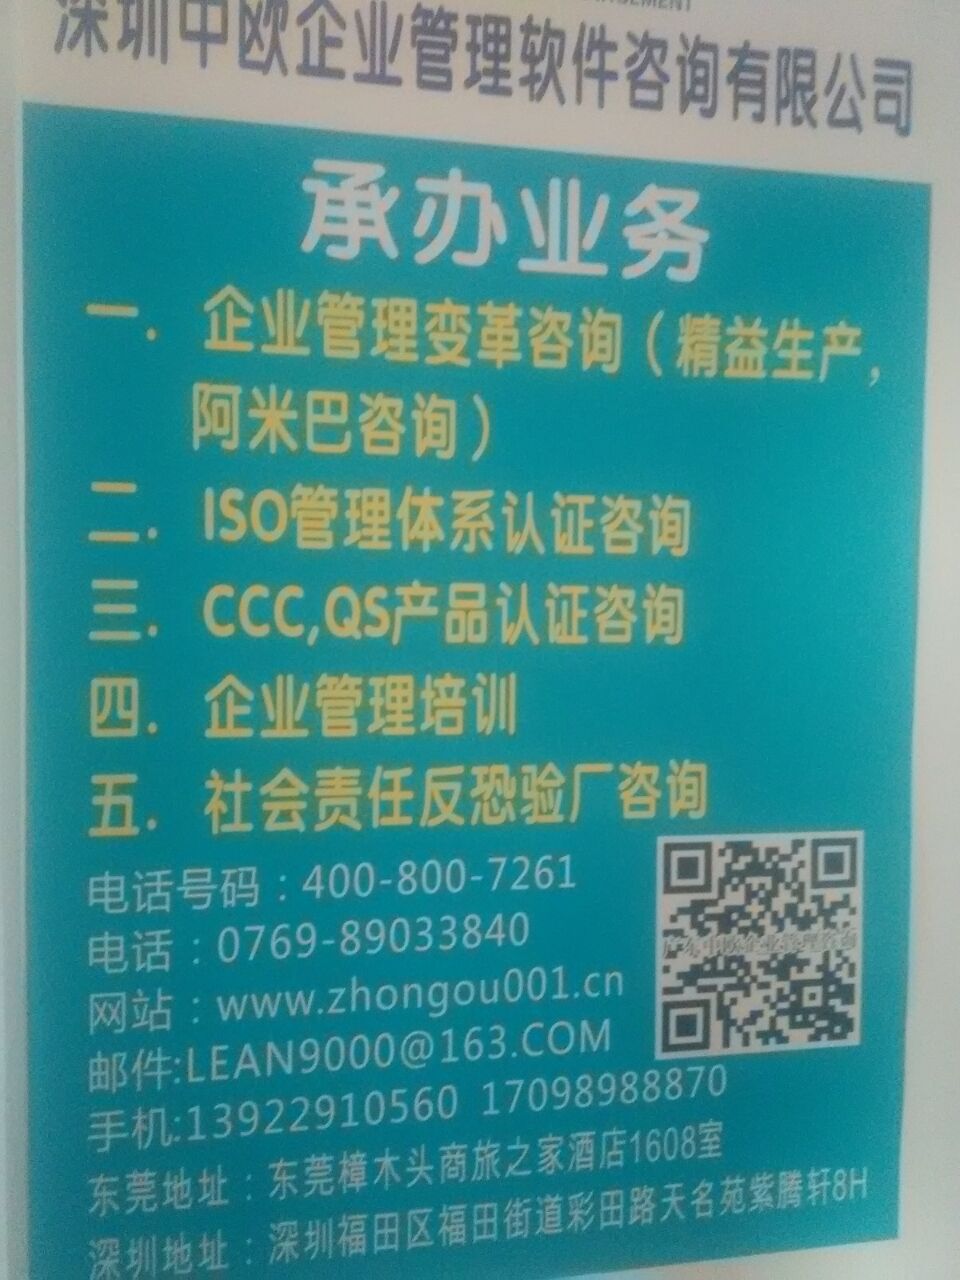 深圳中山iso9001咨询佛山iso9001培训认证新版六联单